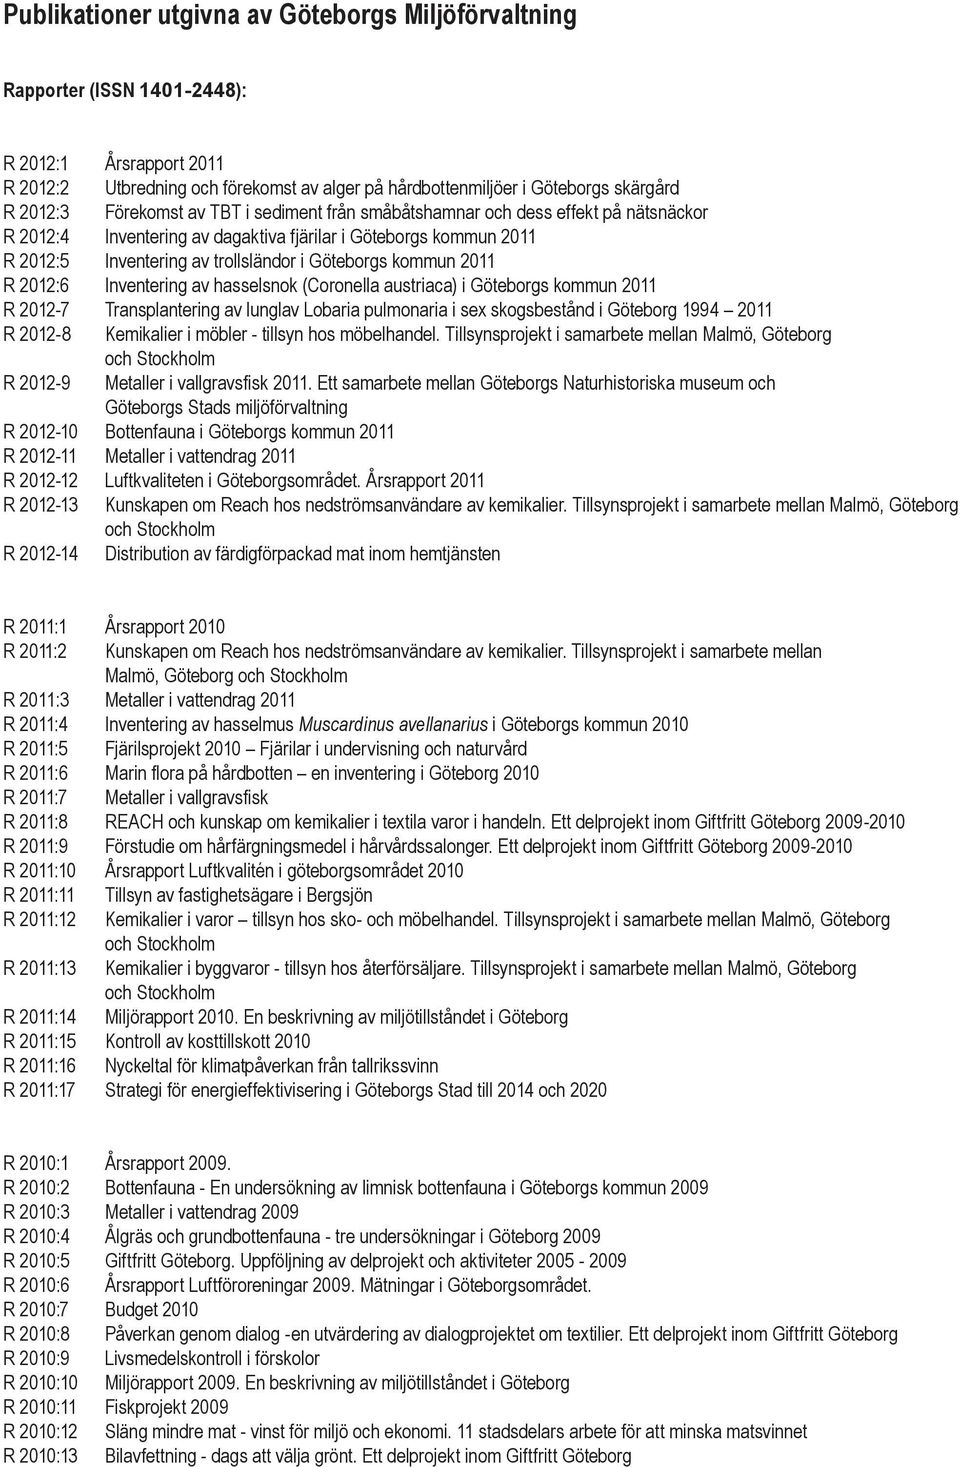 2011 R 2012:6 Inventering av hasselsnok (Coronella austriaca) i Göteborgs kommun 2011 R 2012-7 Transplantering av lunglav Lobaria pulmonaria i sex skogsbestånd i Göteborg 1994 2011 R 2012-8